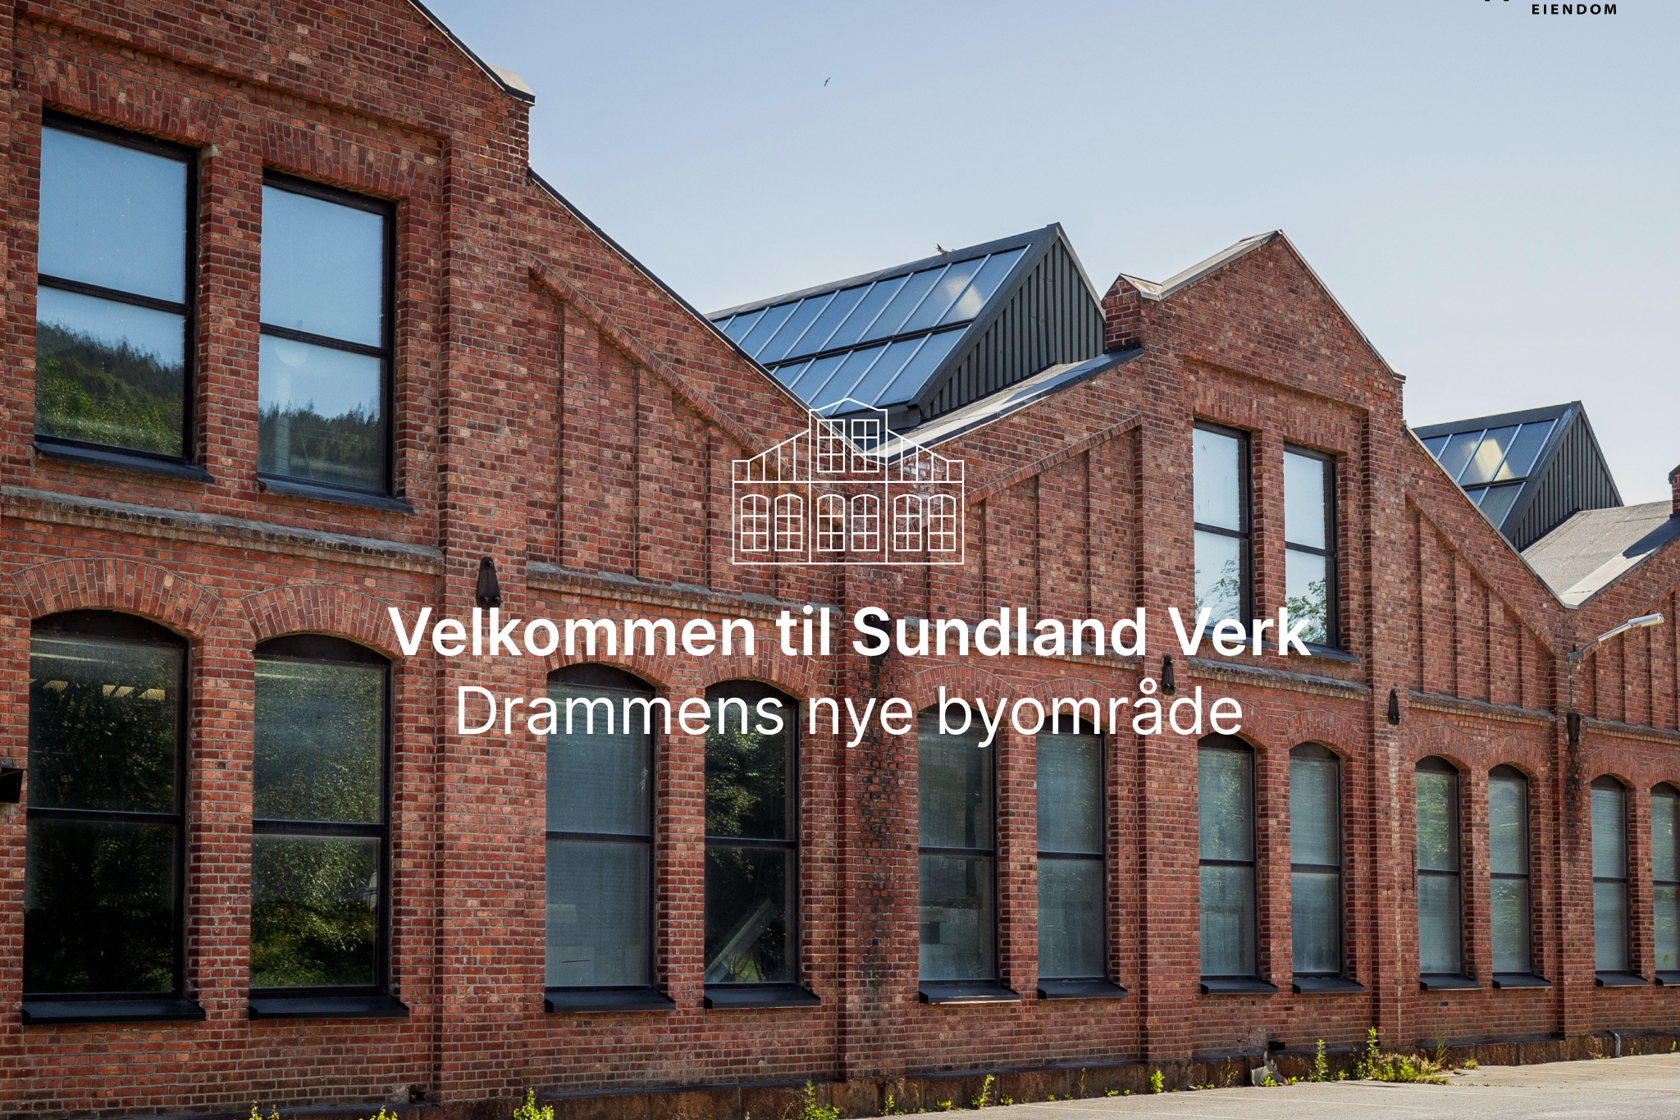 Fasaden på et av byggene på Sundland. Byggene er bygget i rustrød teglstein og har store vinduer.